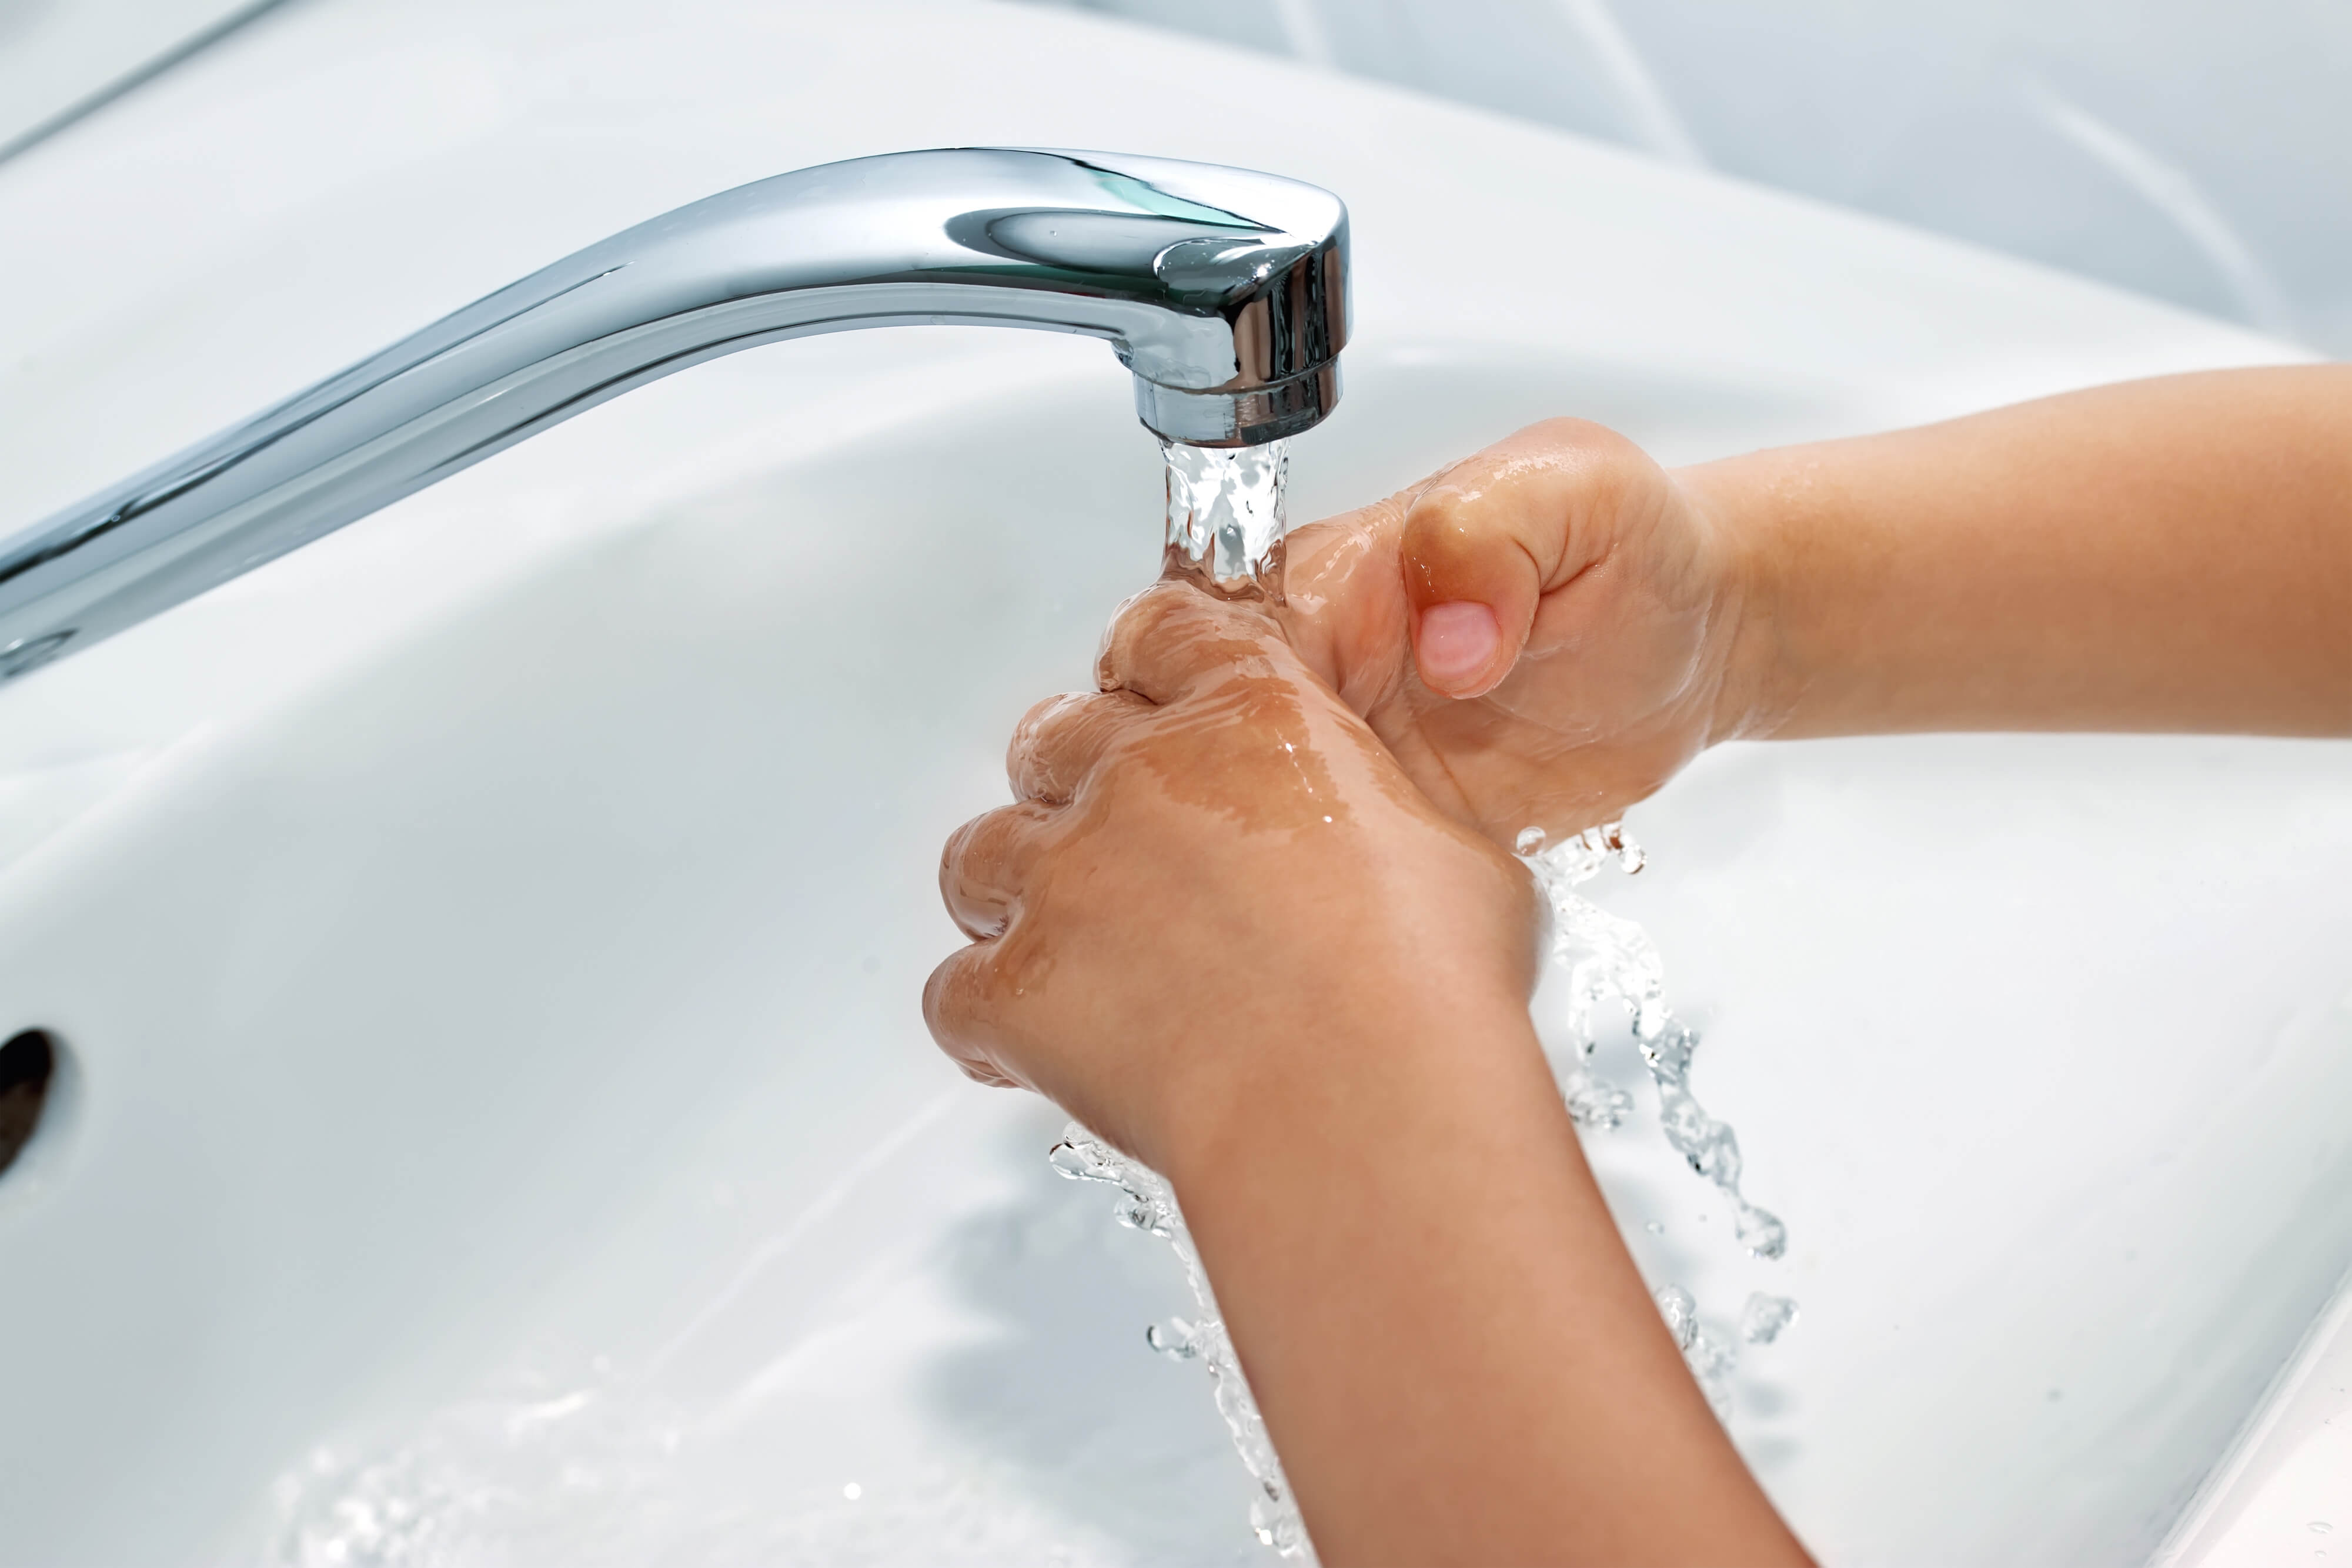 Помыть без воды как. Руки под краном с водой. Руки под струей воды. Мытье рук. Мытье рук под краном.